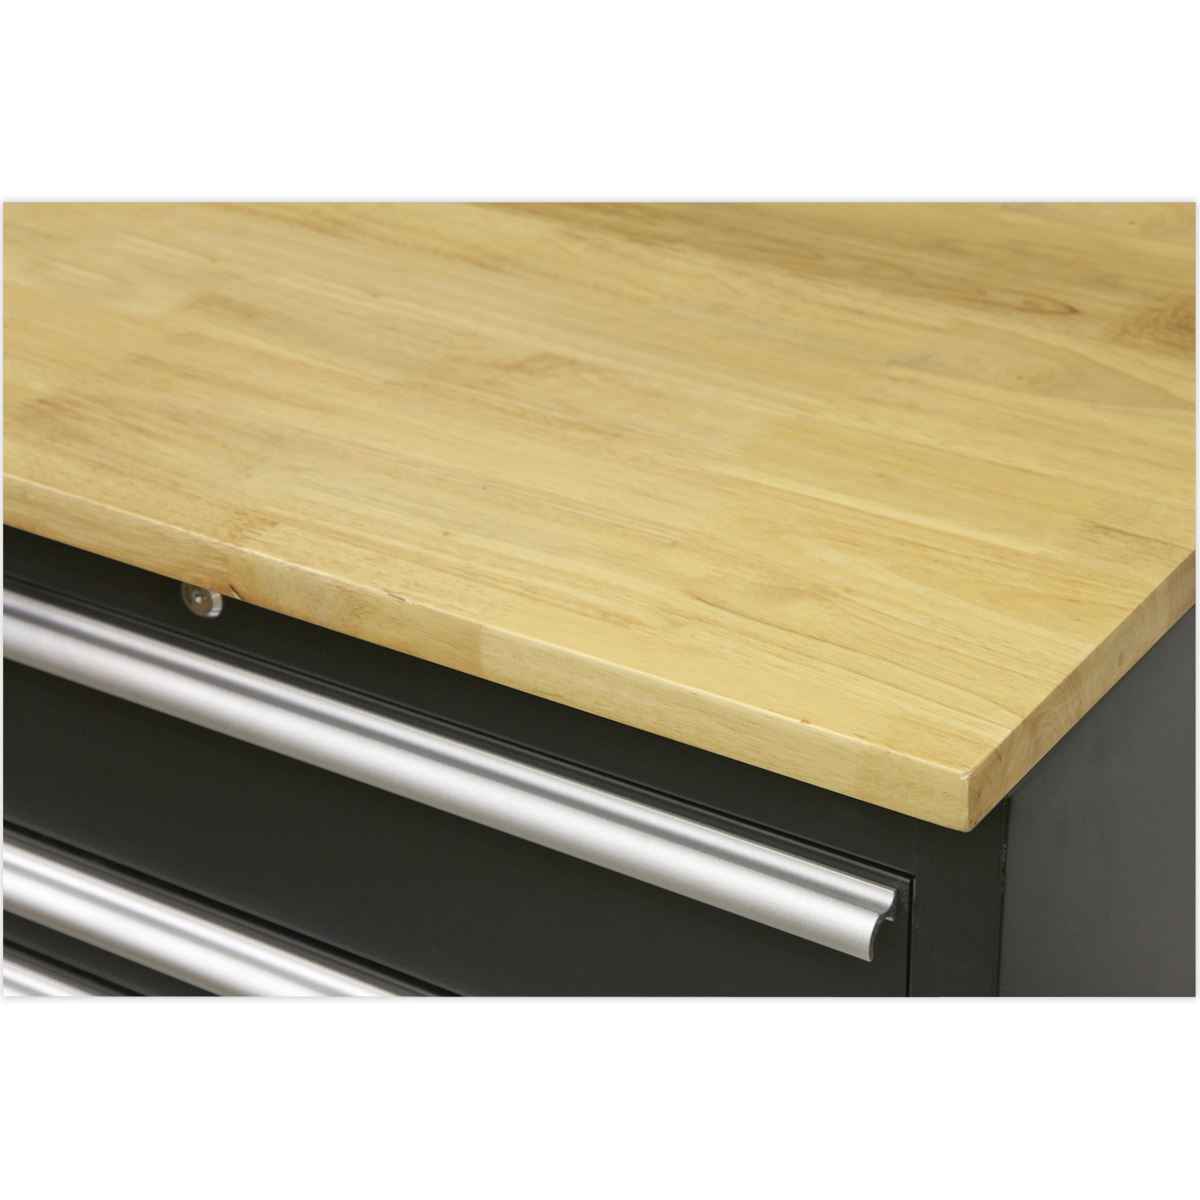 Sealey Premier Premier 3.3m Storage System - Pressed Wood Worktop